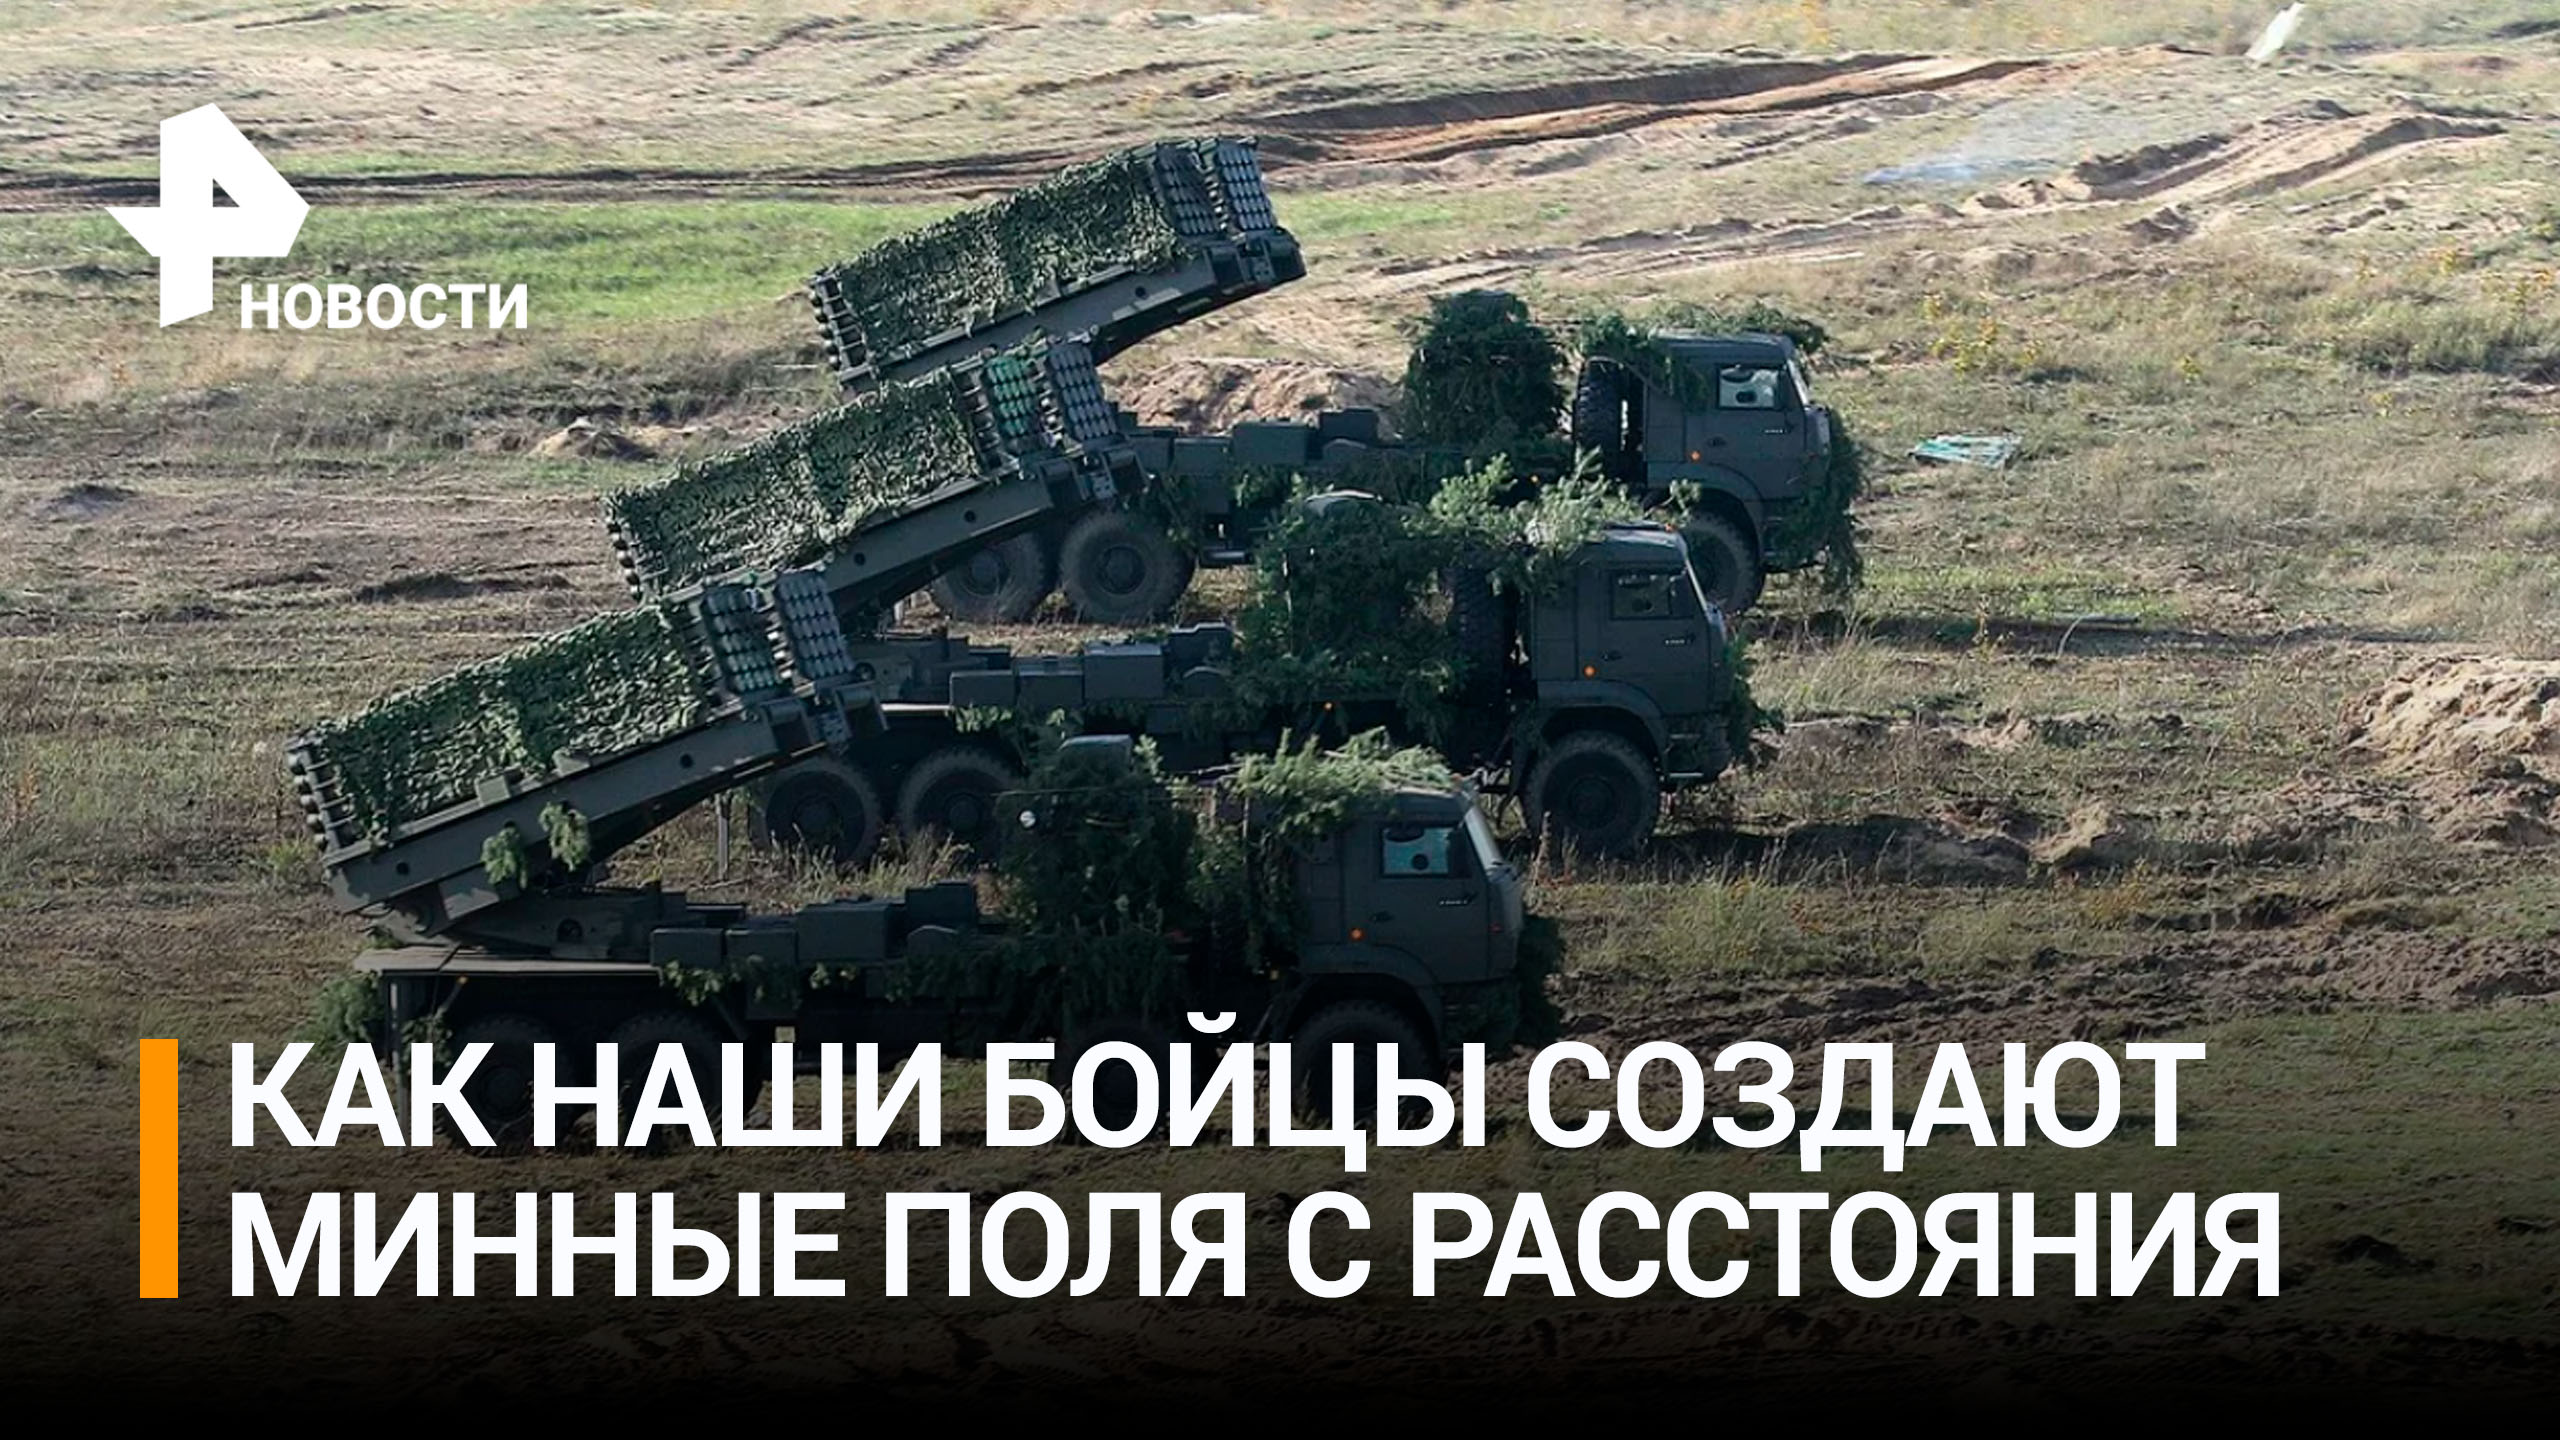 Военные ВС РФ минируют местность с помощью спецмашин, пресекая перемещение ВСУ